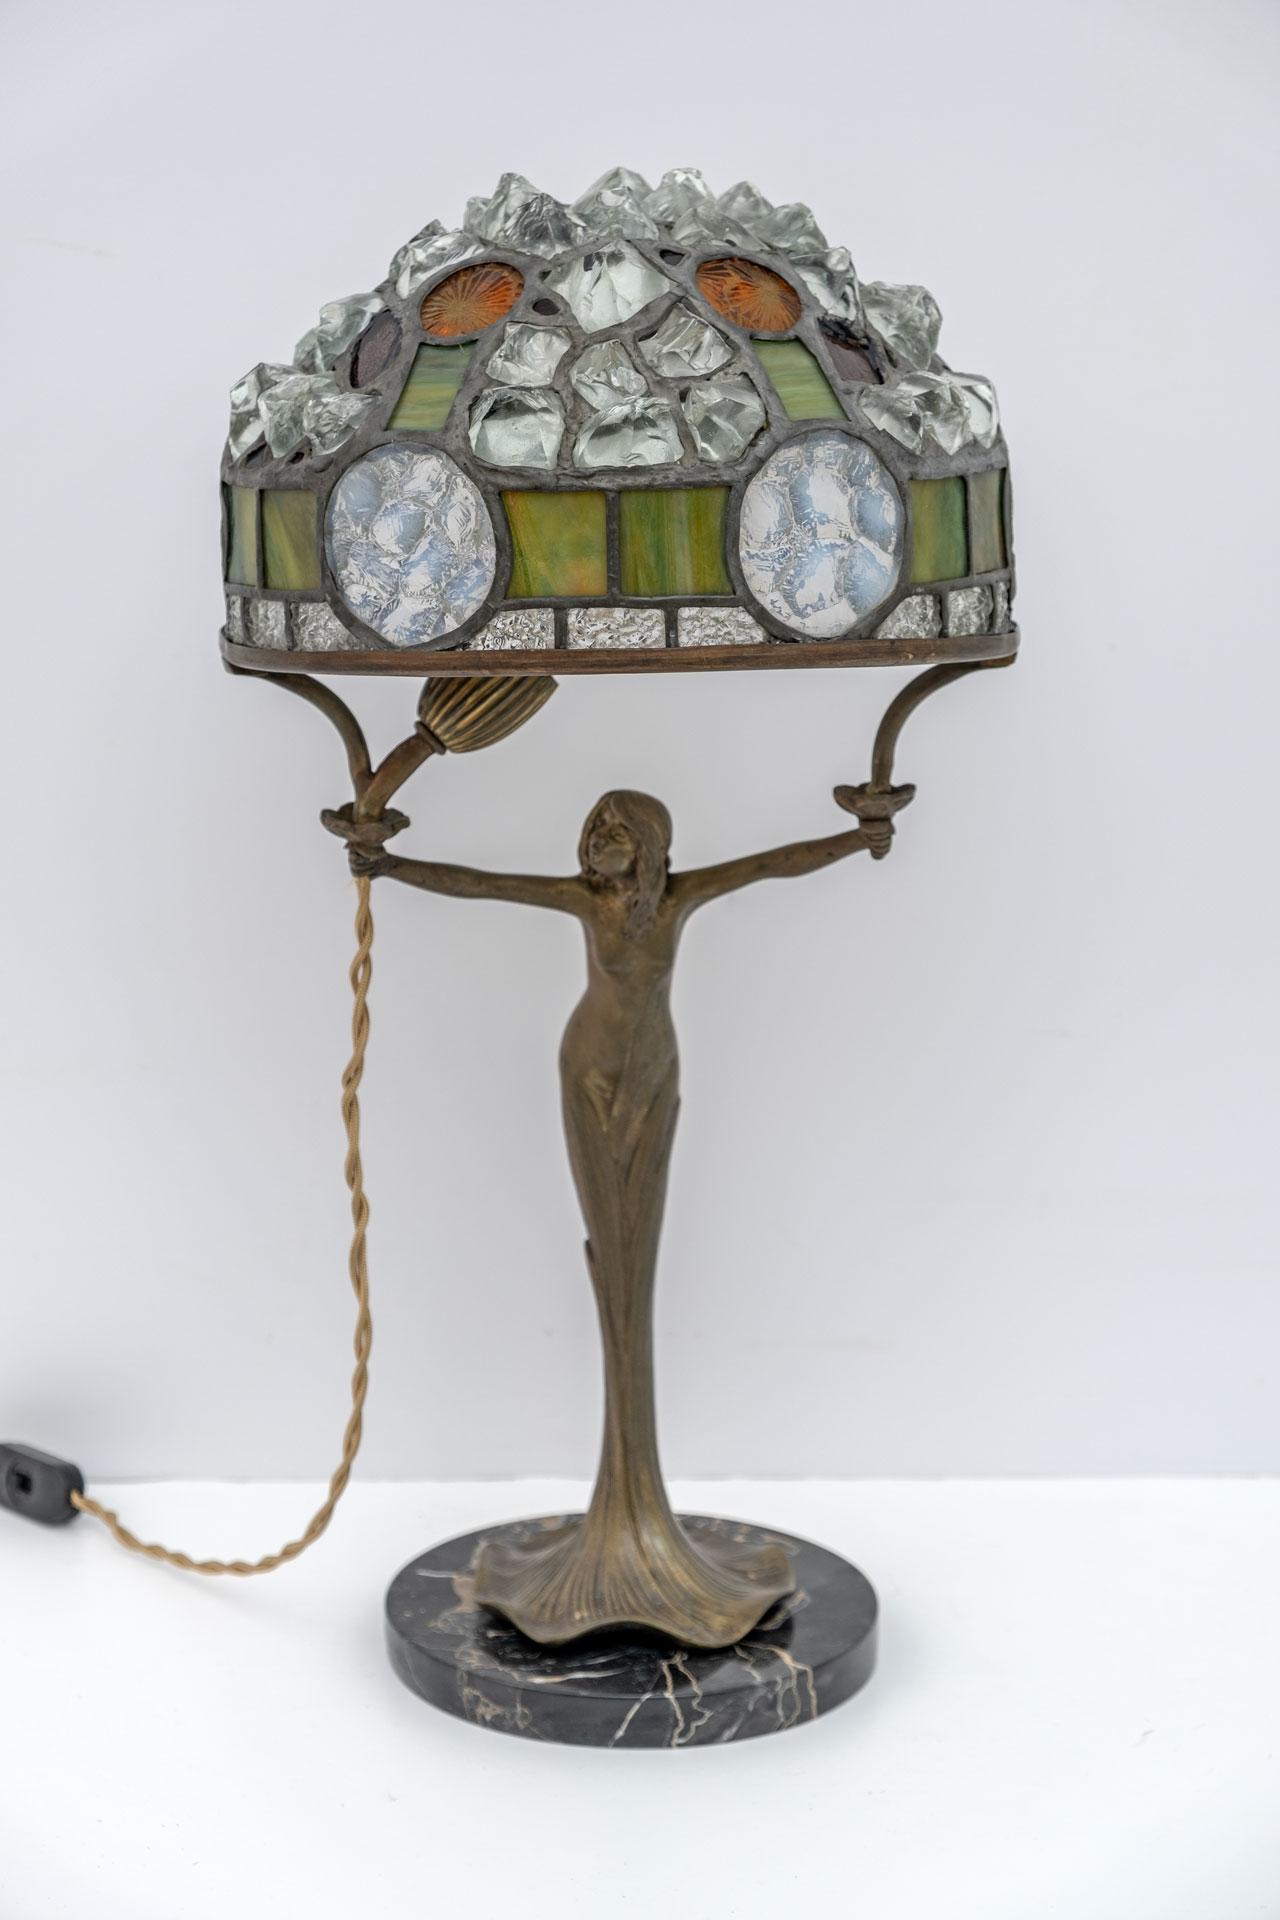 Magnifique lampe de table de style Tiffany, production française des années 1930, période Art Nouveau. La base est en laiton moulé et le socle en marbre noir, l'abat-jour en verre coloré et pièces de cristal, plombées ensemble. Cette lampe se